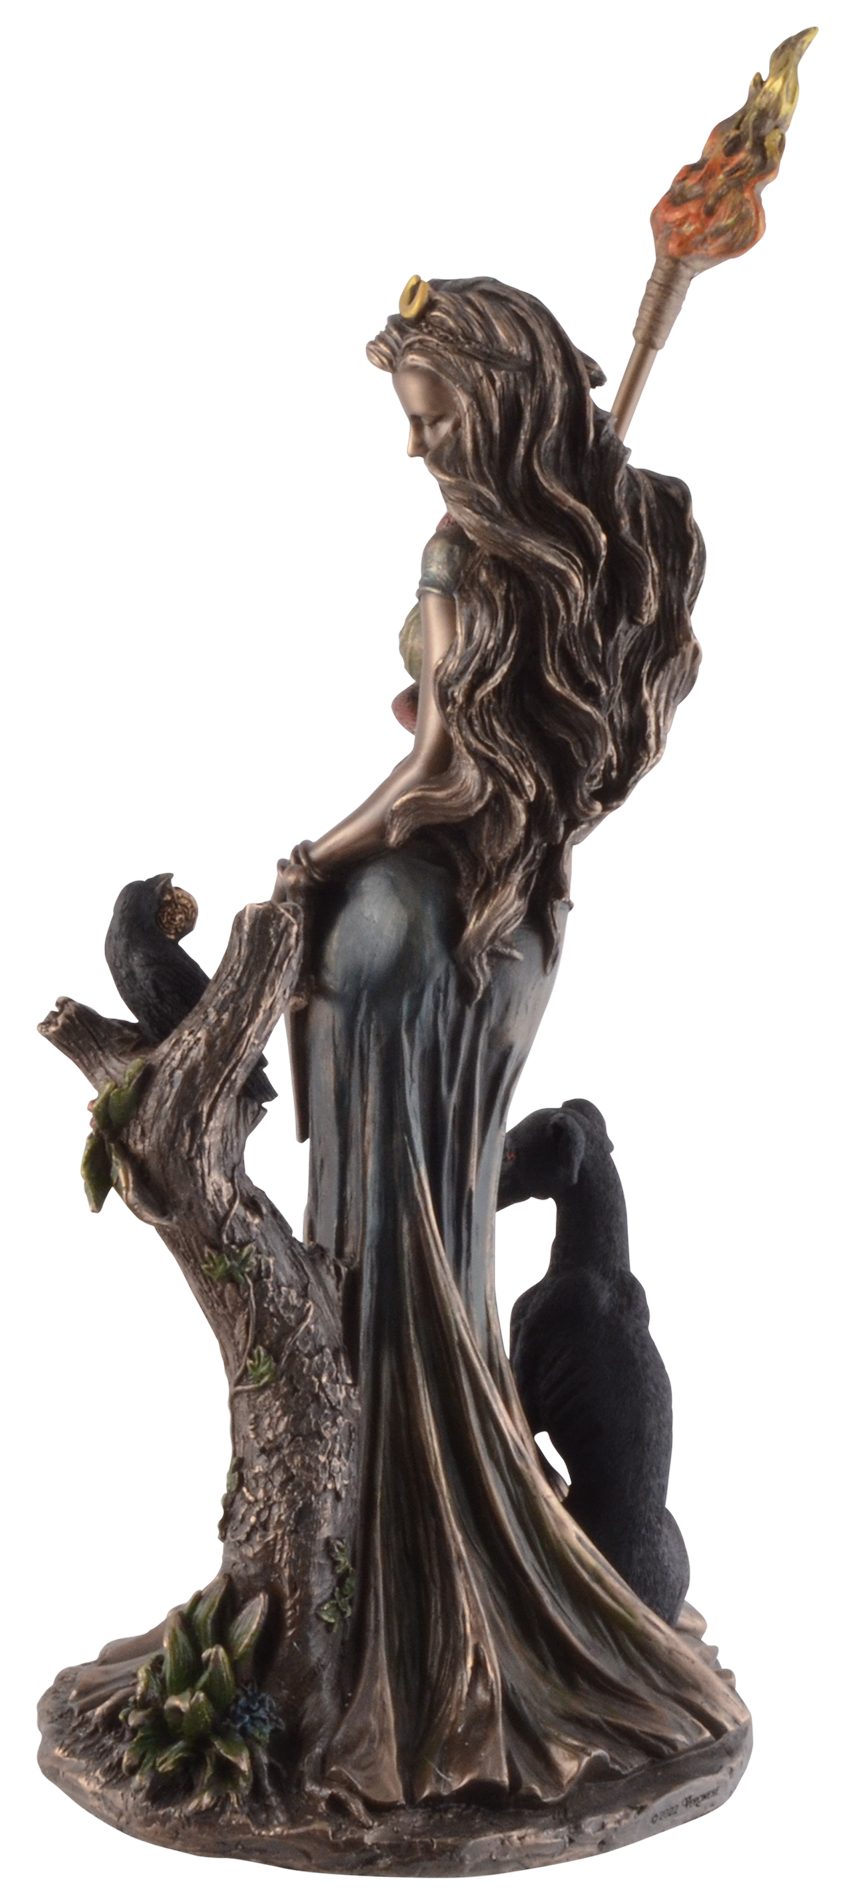 Kunststein, Göttin by Magie 16x13x34cm bronziert, Dekofigur Größe: Veronese, der Gmbh - by Hekate ca. L/B/H Veronese, direct griechische bronziert/coloriert Vogler